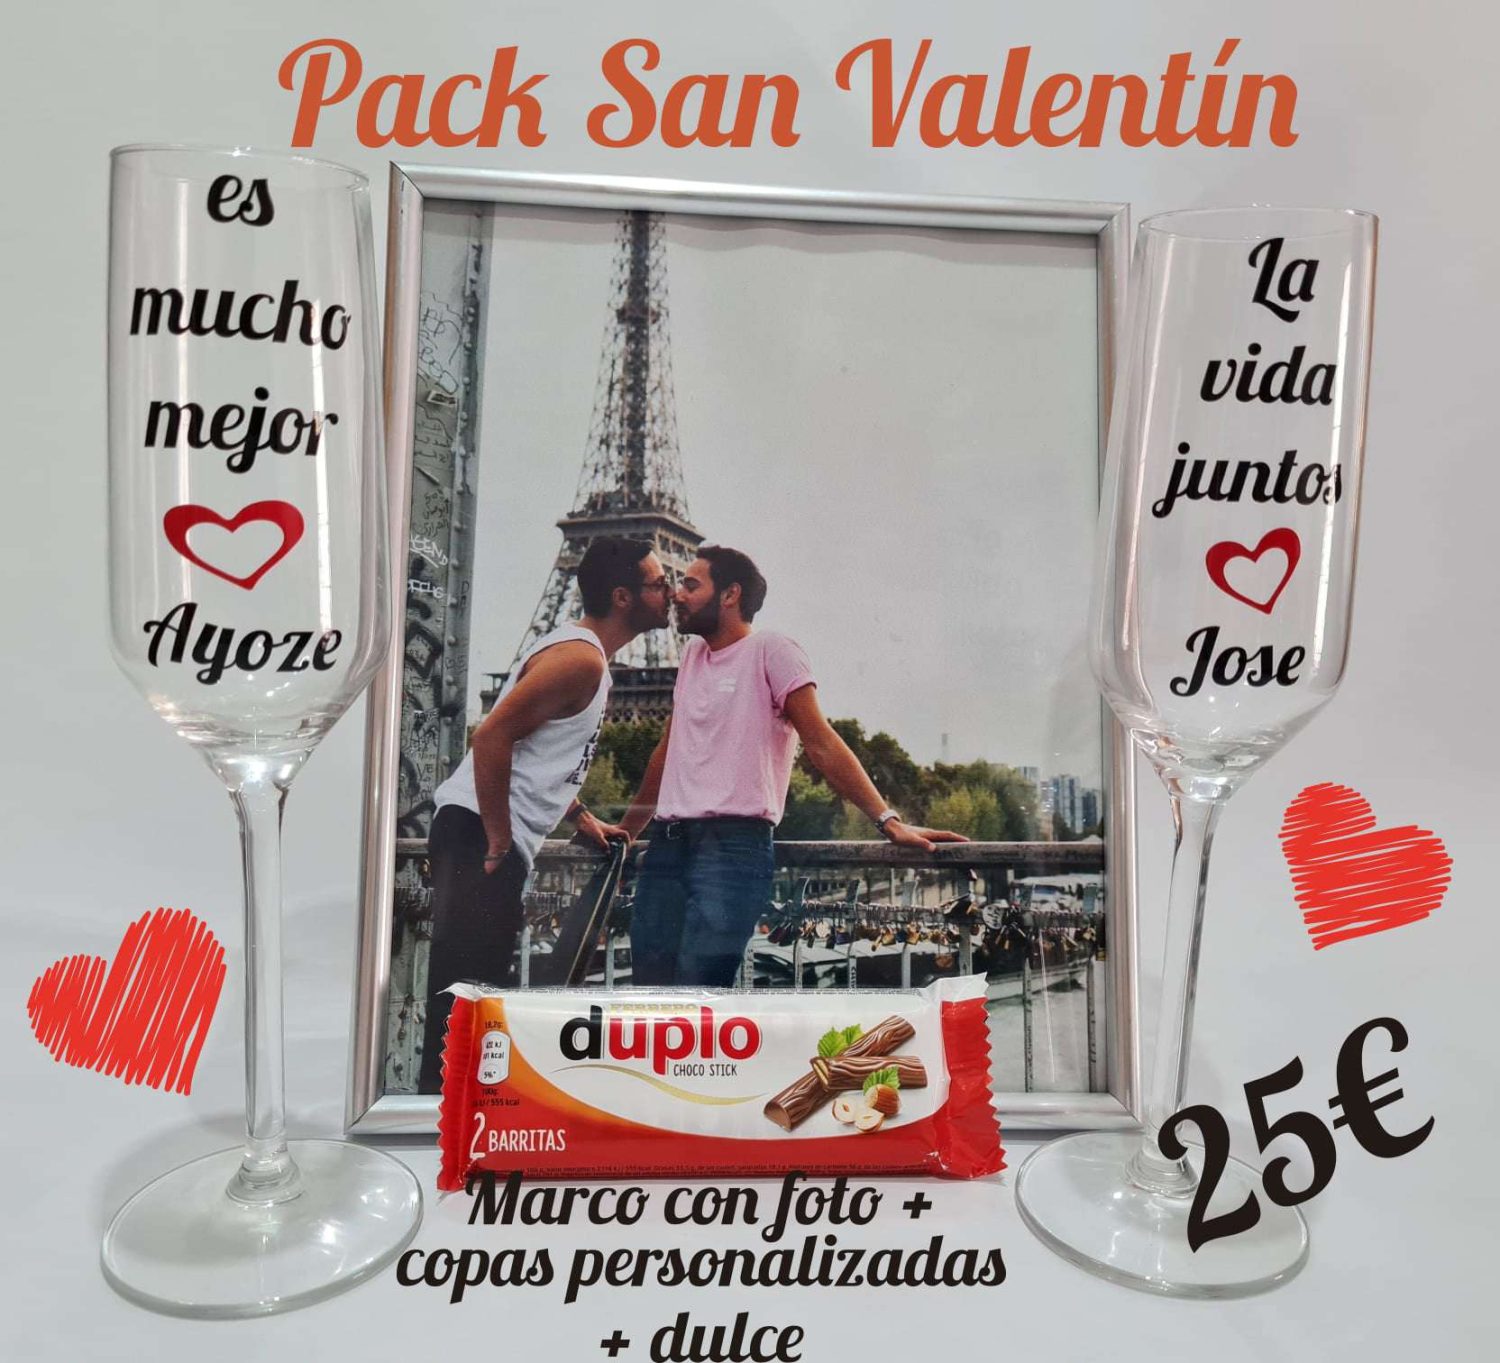 Pack San Valentin para el dia de los enamorados El y El